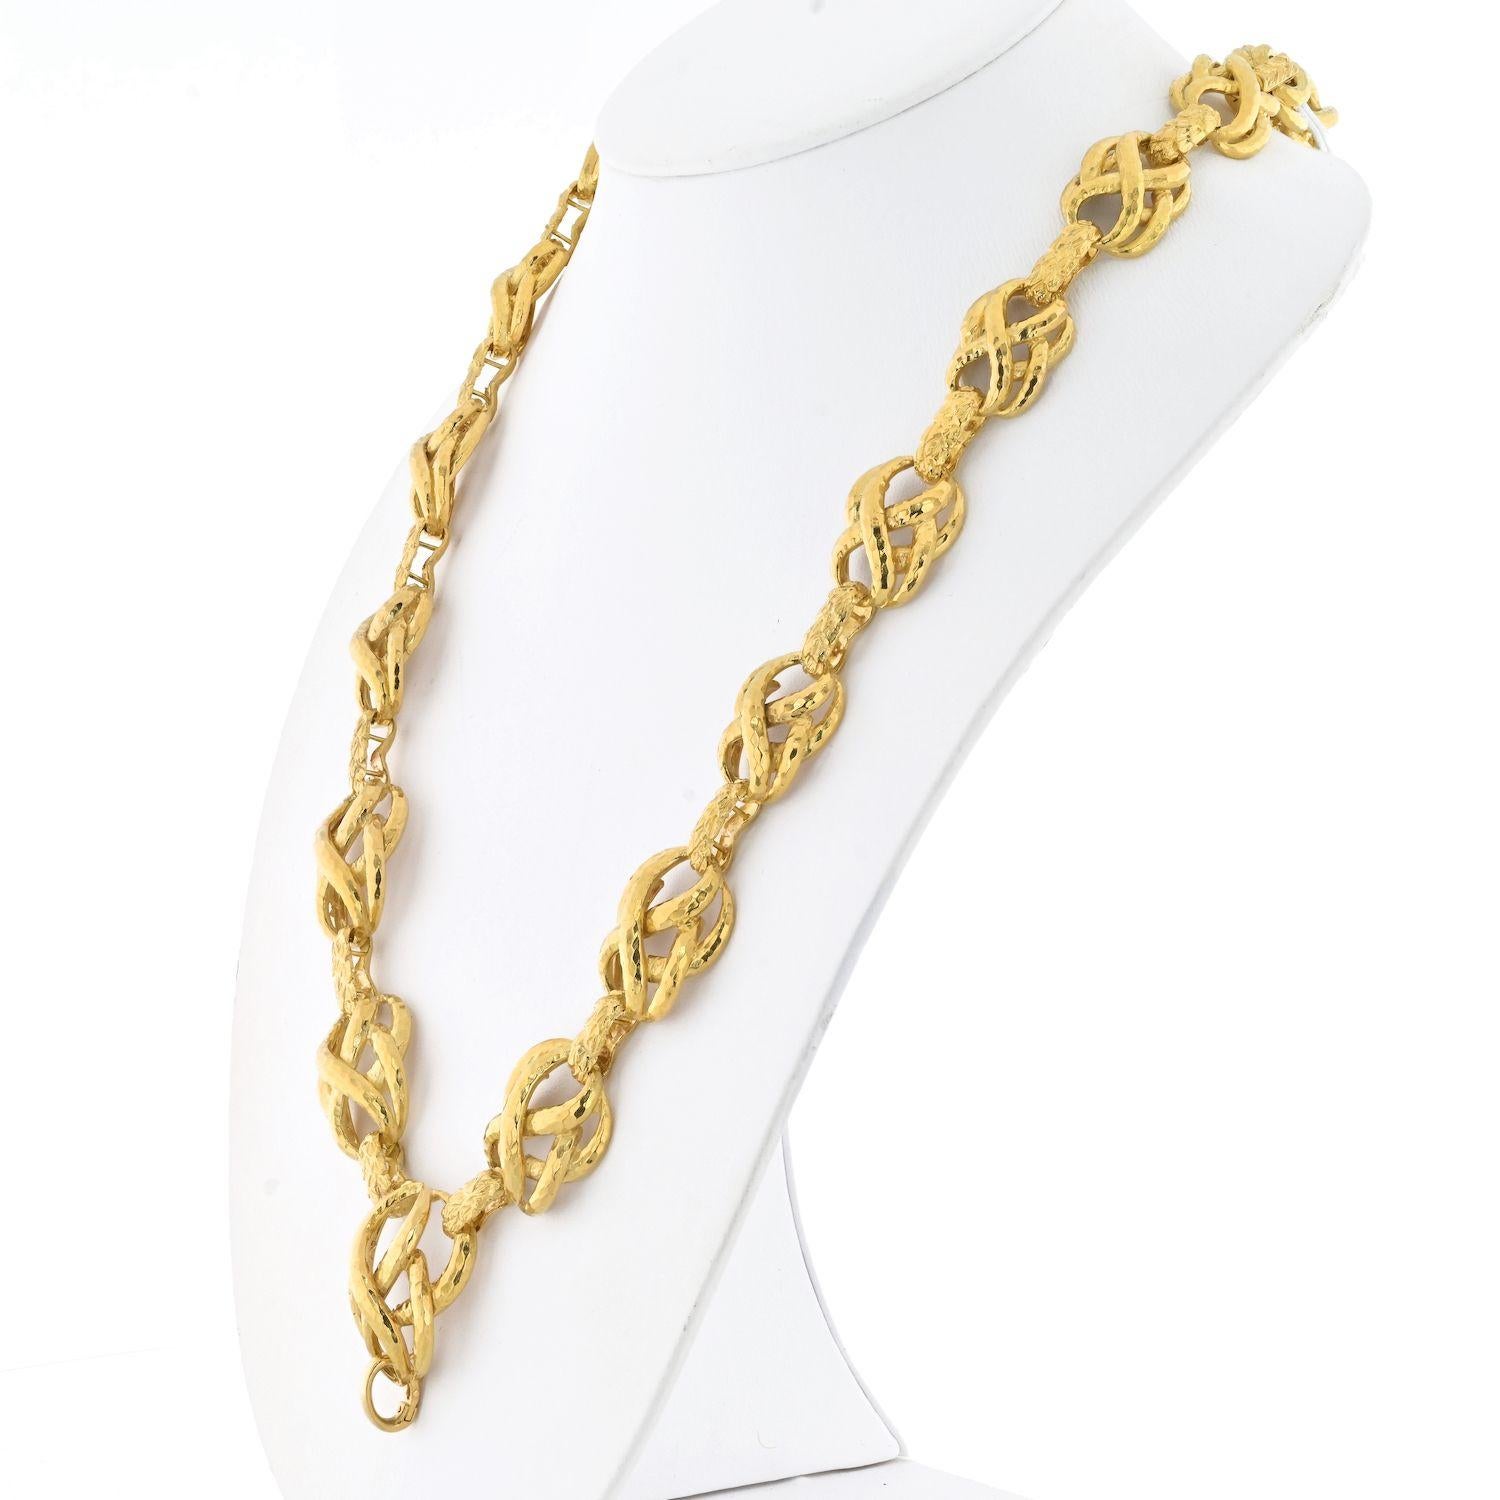 Élevez votre collection de bijoux avec l'élégance intemporelle du collier à maillons torsadés texturés en or jaune 18K de David Webb. D'une longueur de 25 pouces, cette pièce exquise témoigne de l'art inégalé de Webb. Le collier présente un jeu de